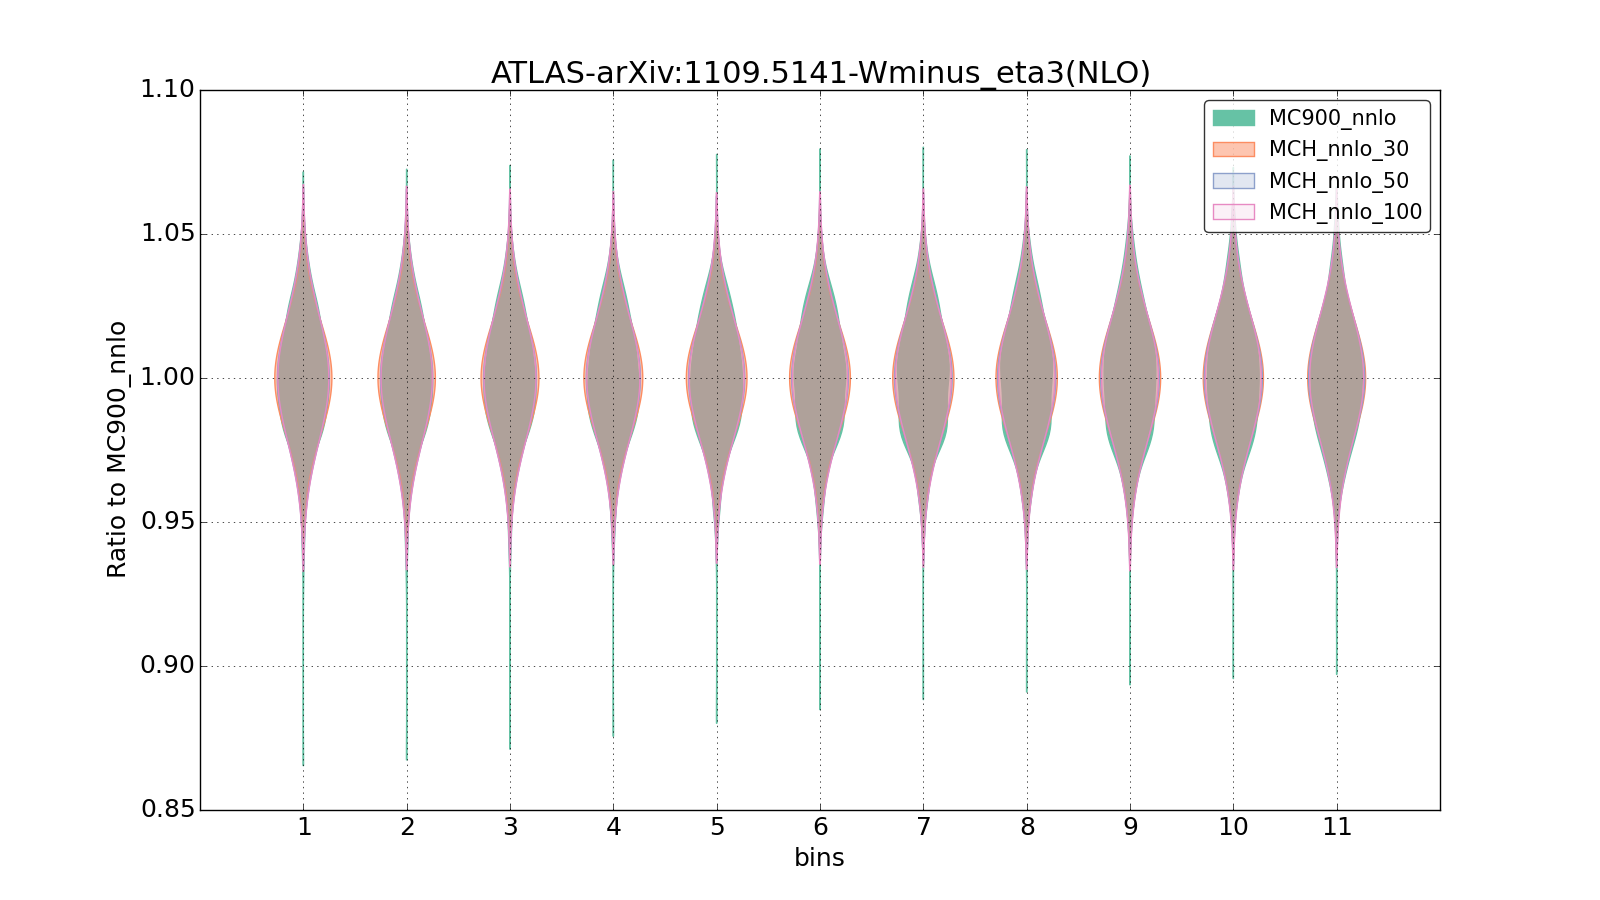 figure plots/pheno_new/NNLO/violinplot_ATLAS-arXiv:11095141-Wminus_eta3(NLO).png